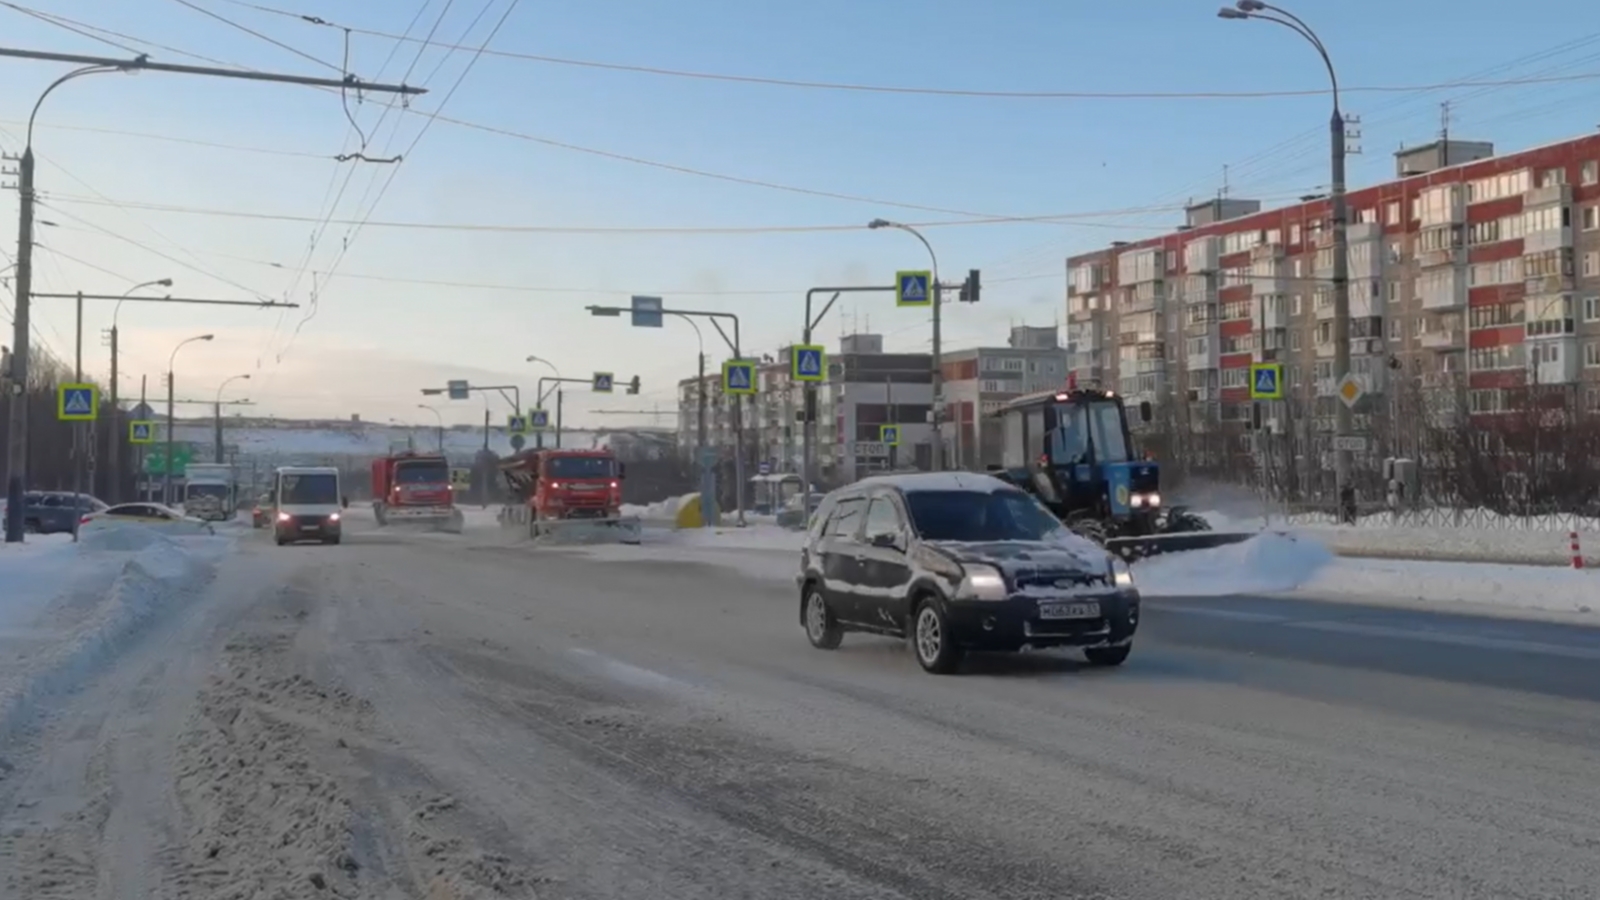 Мурманск приходит в себя после снегопада [видео]